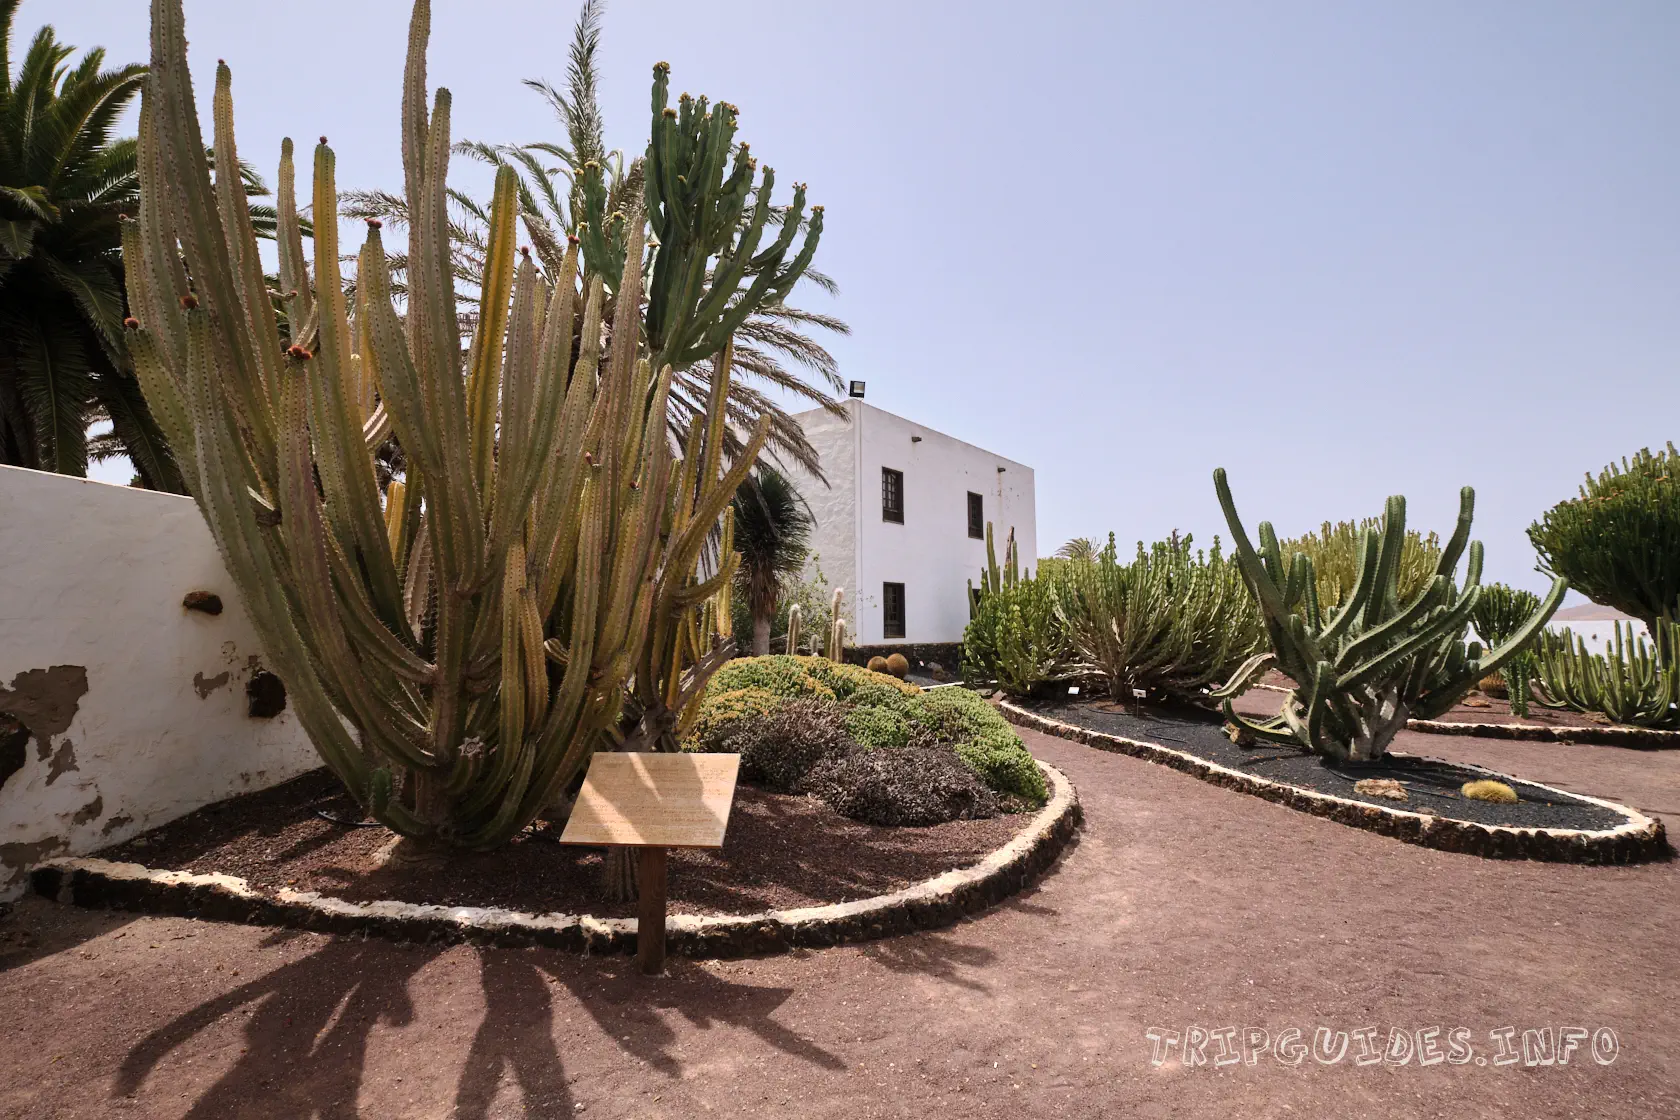 Сад кактусов в музее козьего сыра Махореро - Фуэртевентура